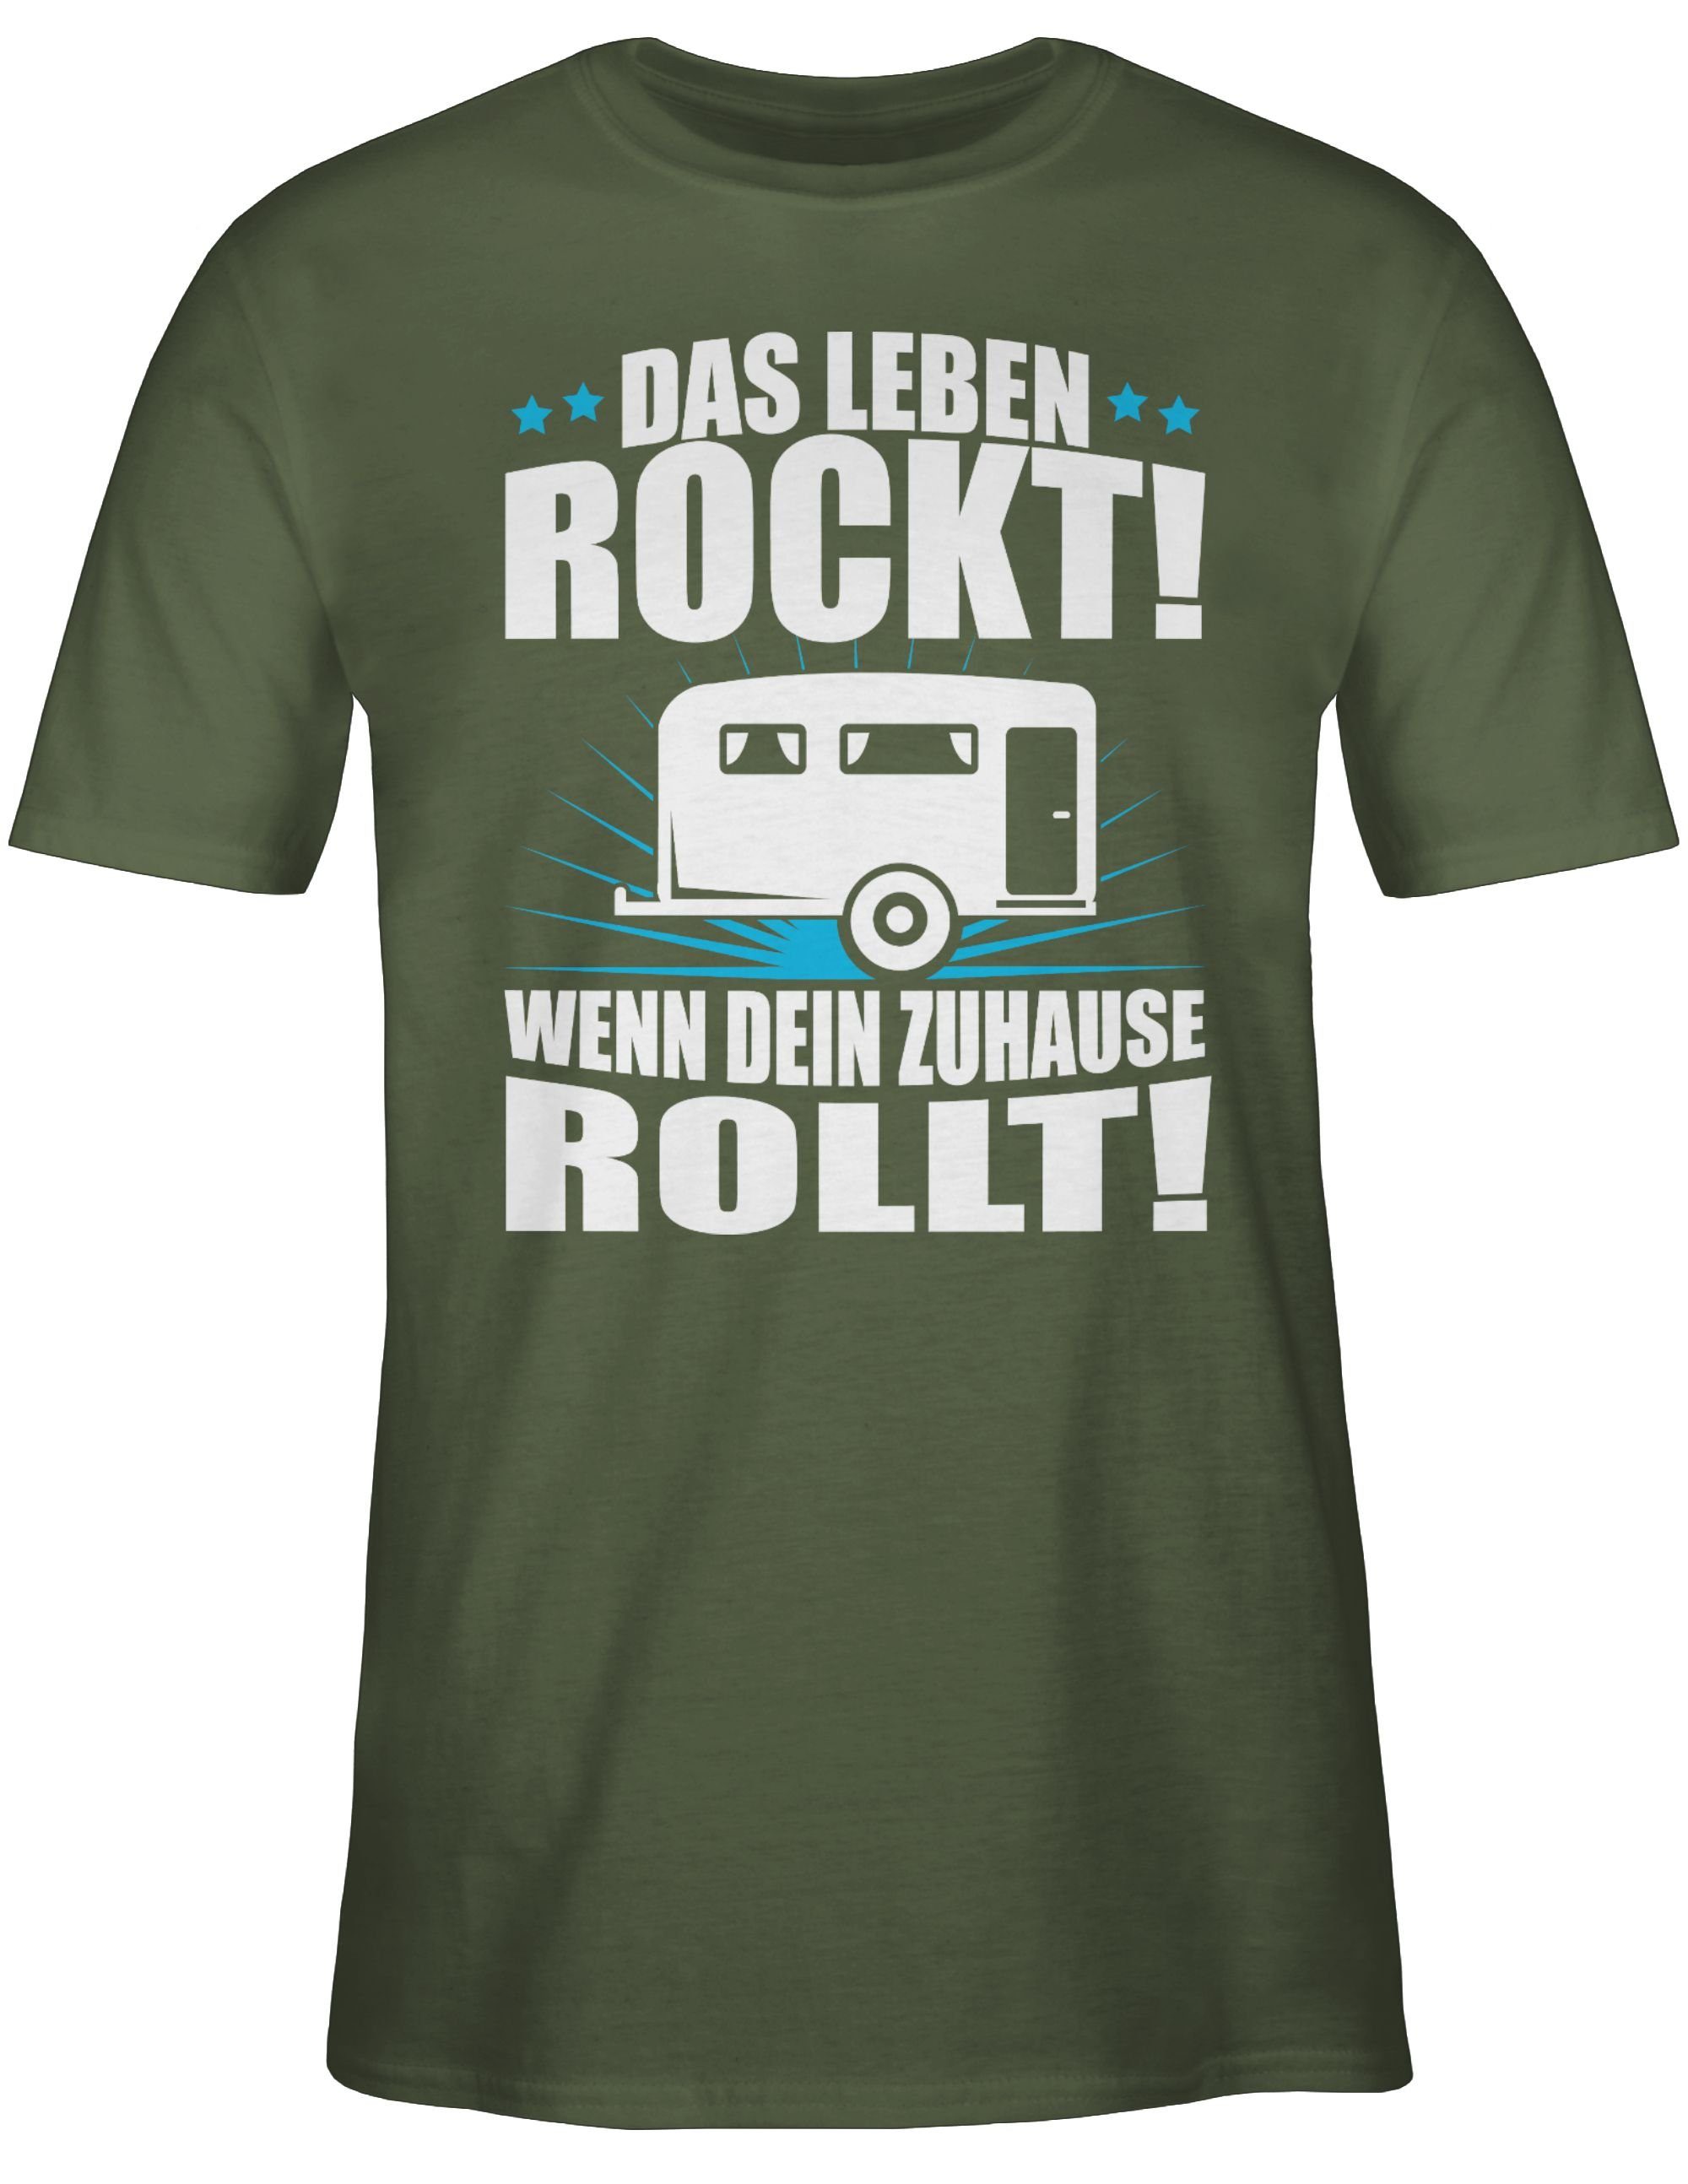 Army Outfit Wohnwagen Hobby rockt! weiß Leben Shirtracer Das Grün 3 T-Shirt